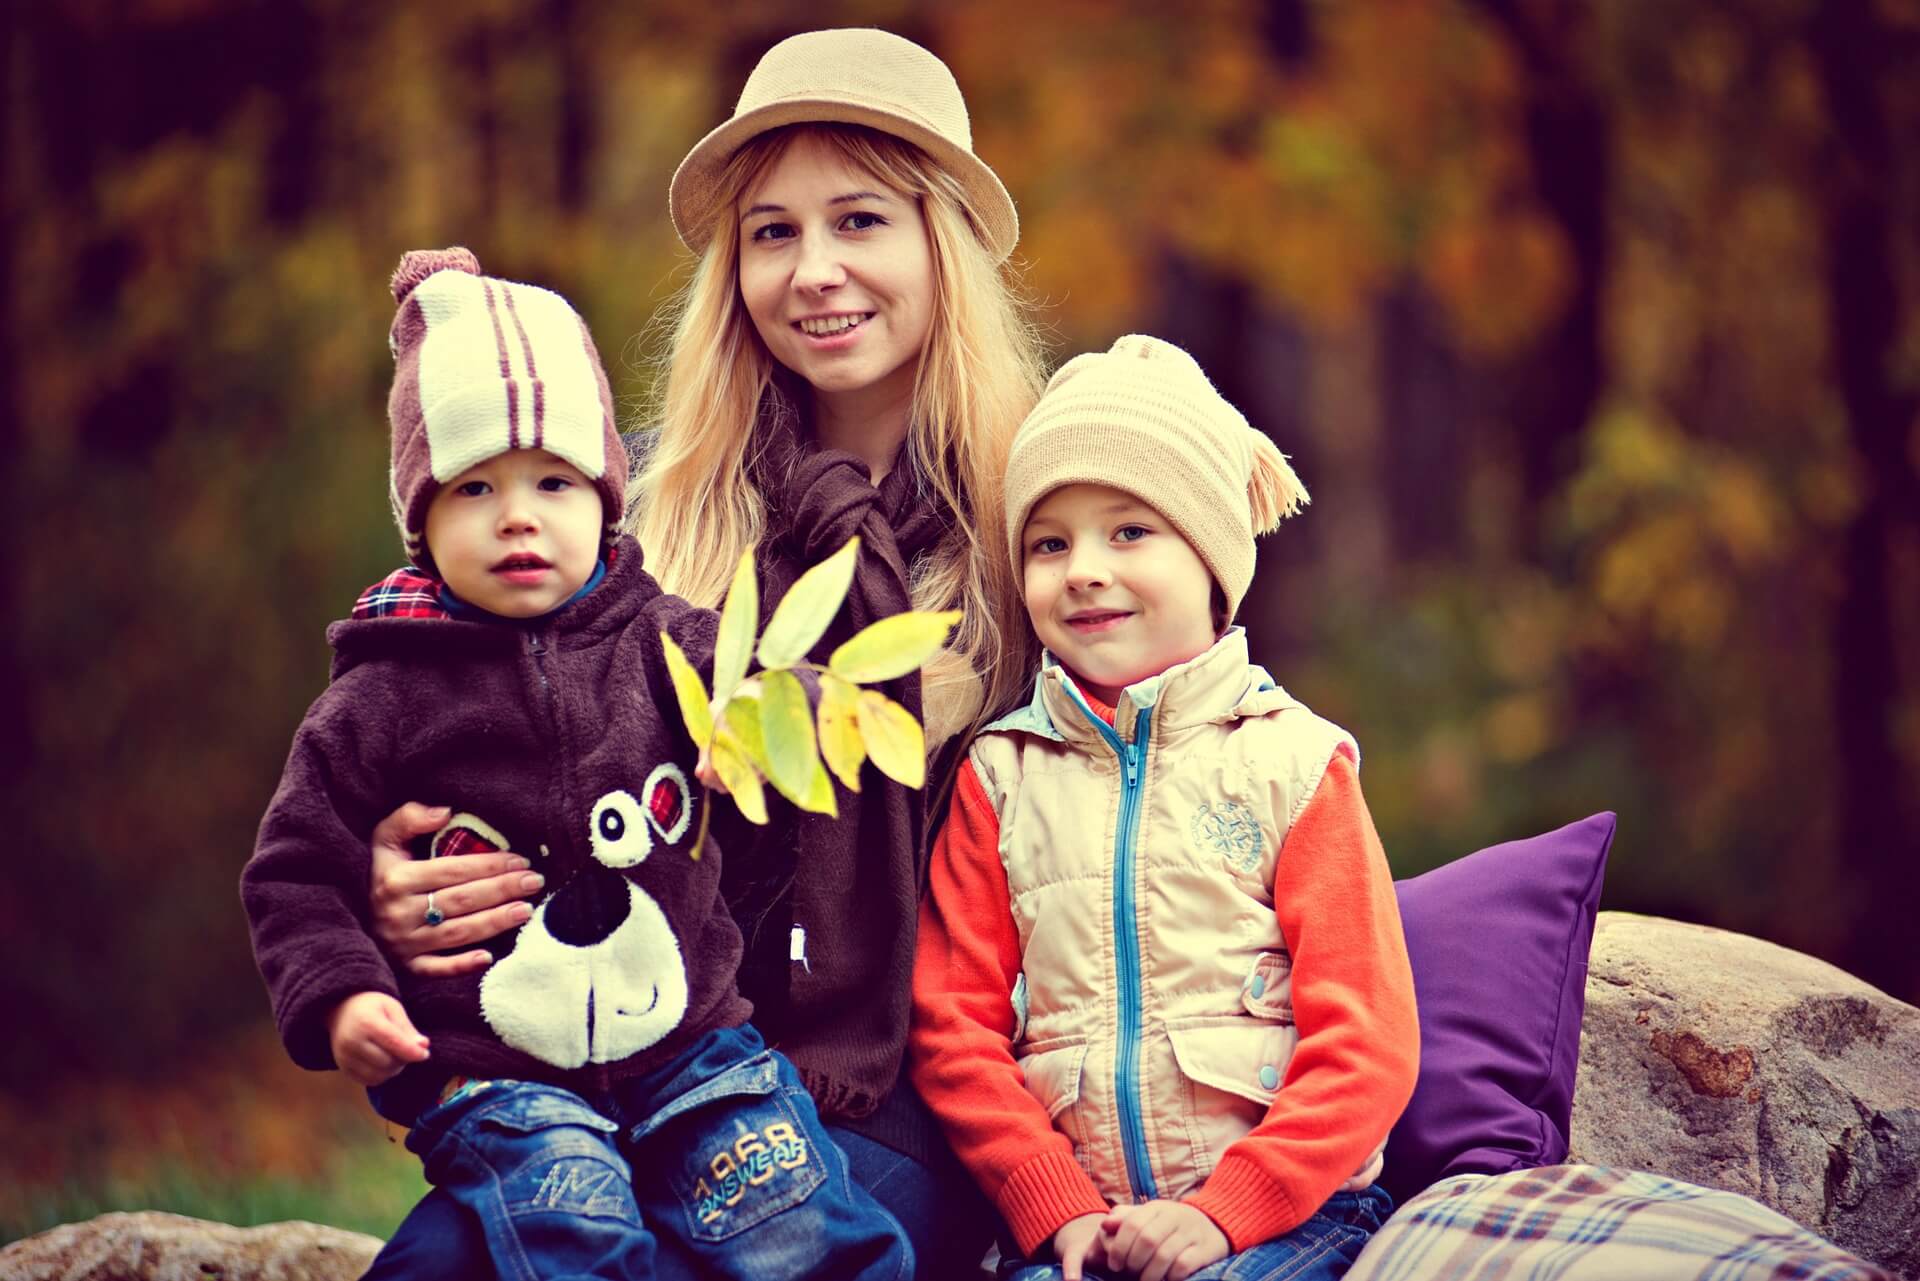 Rodina s deťmi v parku